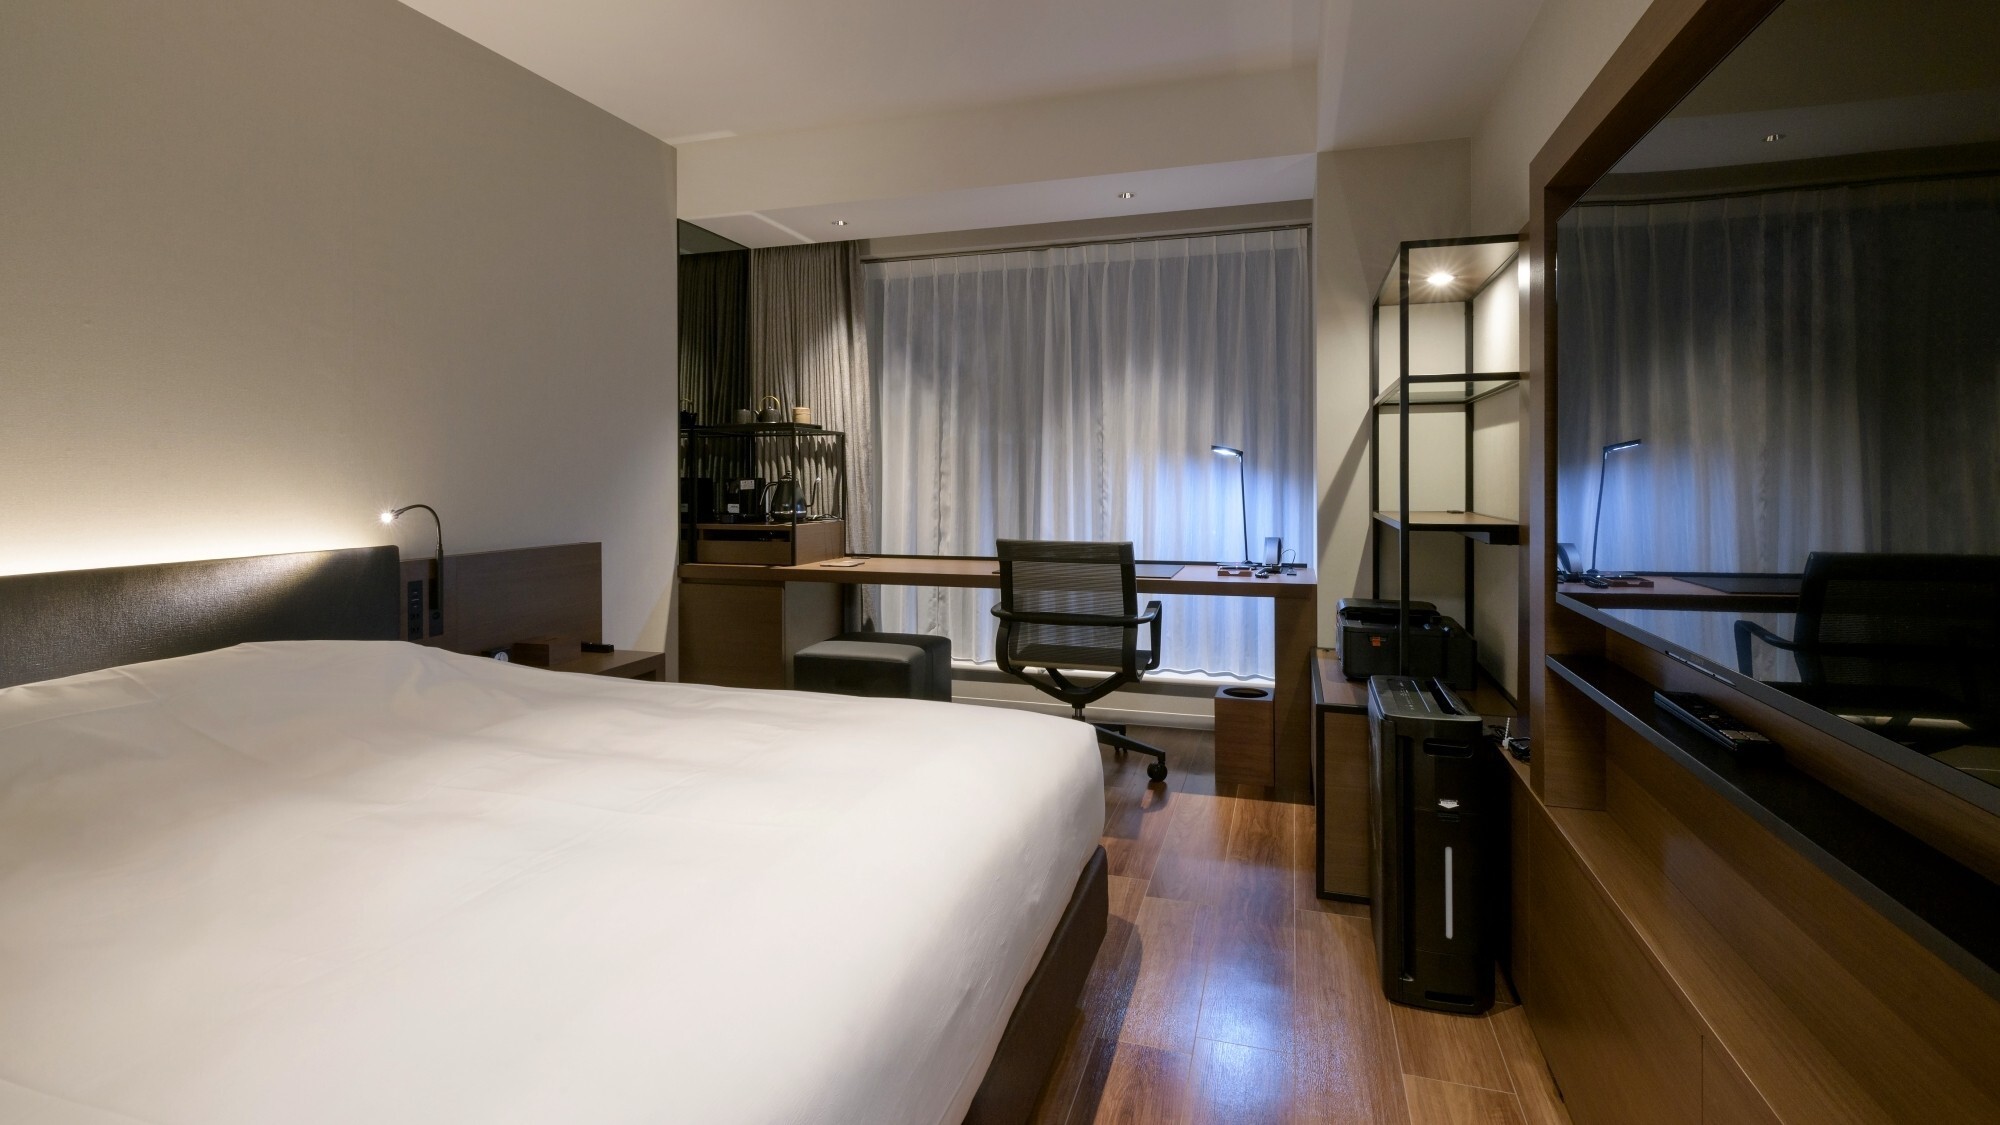 【クリエイティブルーム一例】ビジネス+αが得られる客室。幅1800mのベッドが上質な眠りを提供。